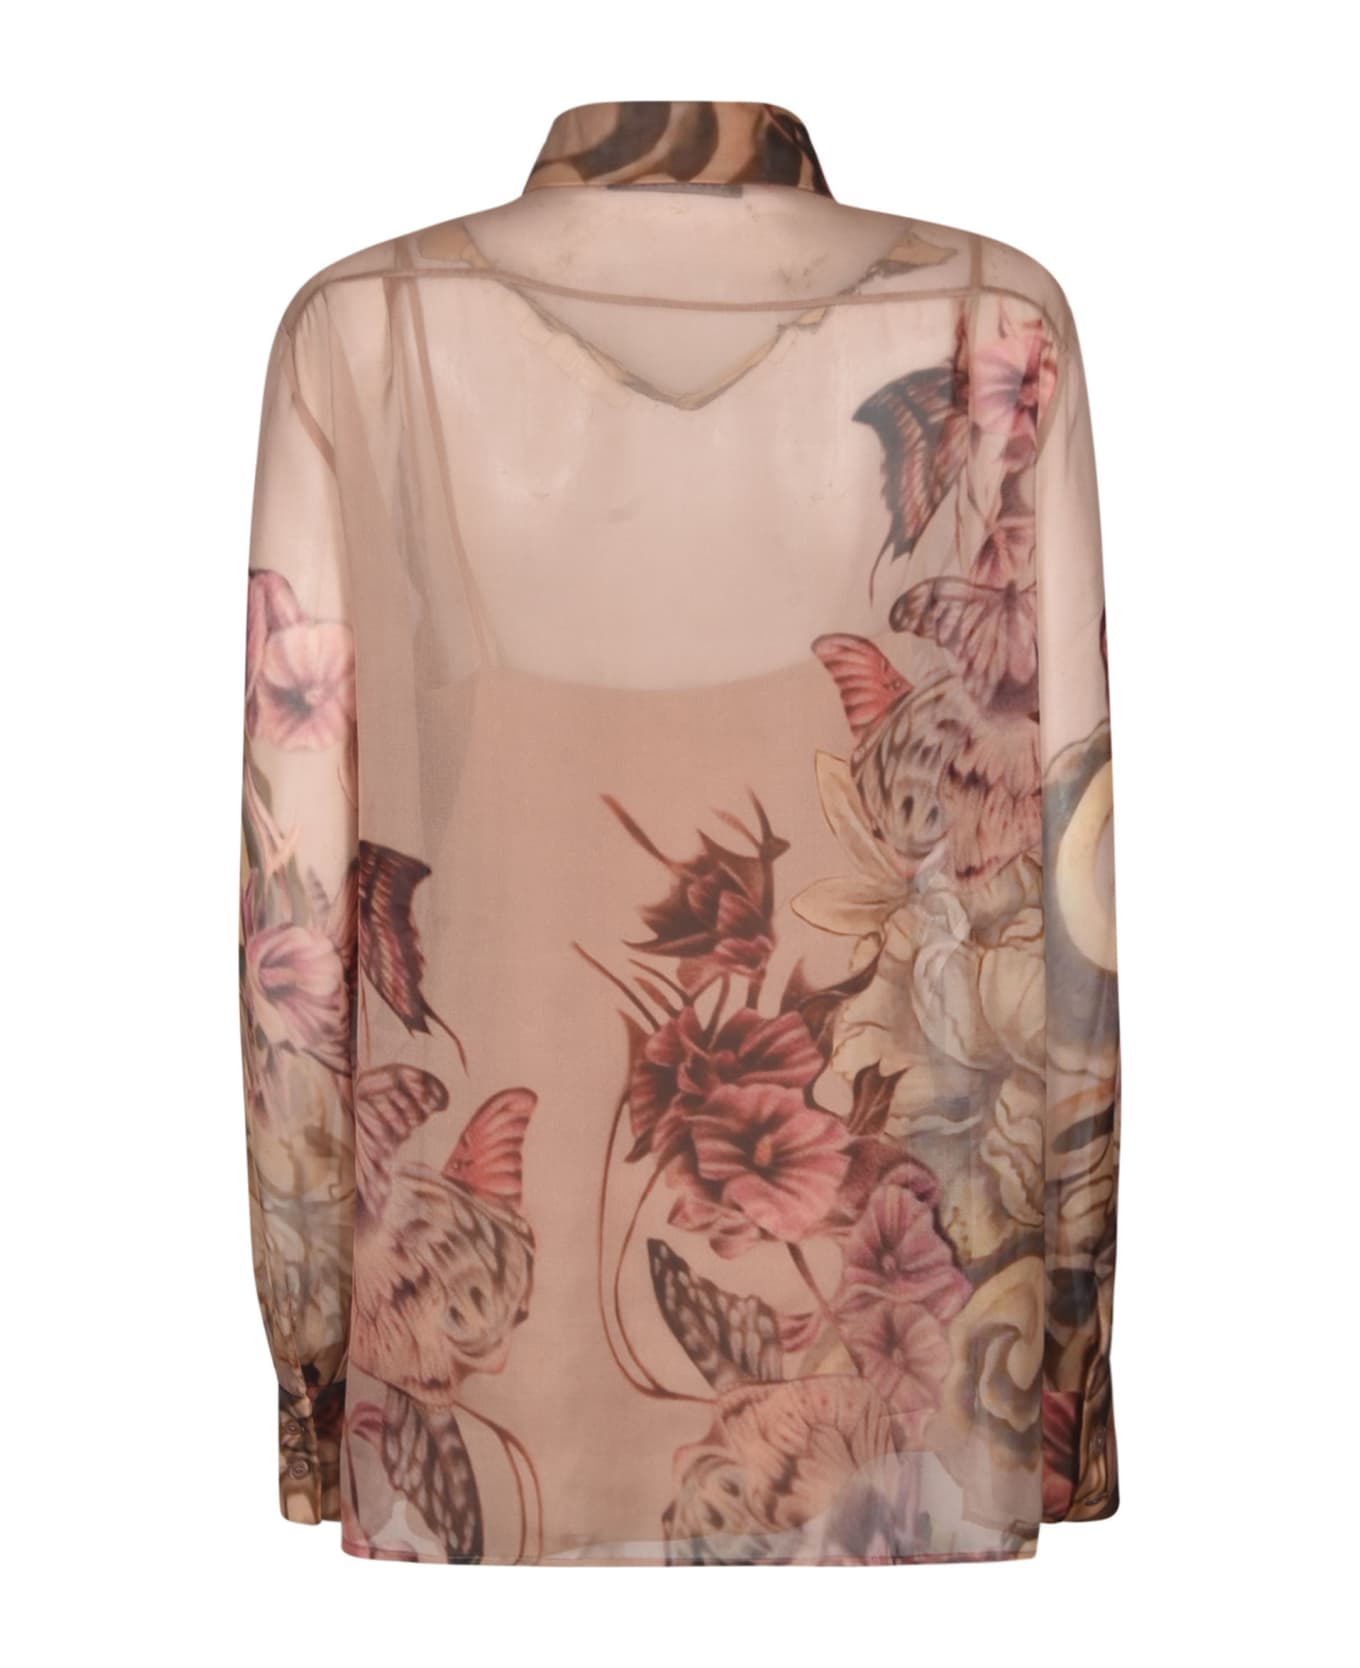 Alberta Ferretti Floral Print Shirt - Pink/Brown